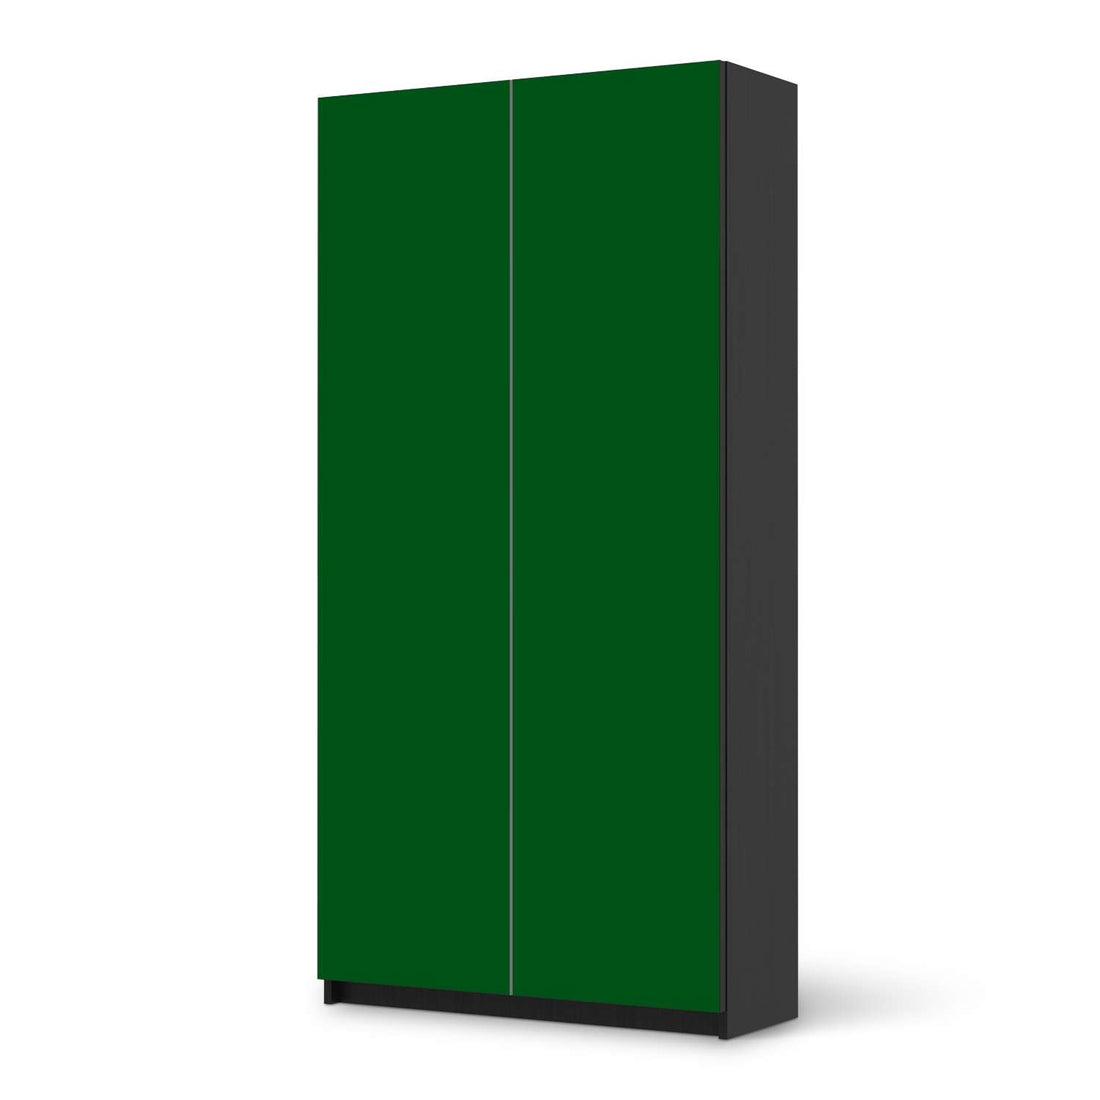 Klebefolie für Möbel Grün Dark - IKEA Pax Schrank 201 cm Höhe - 2 Türen - schwarz